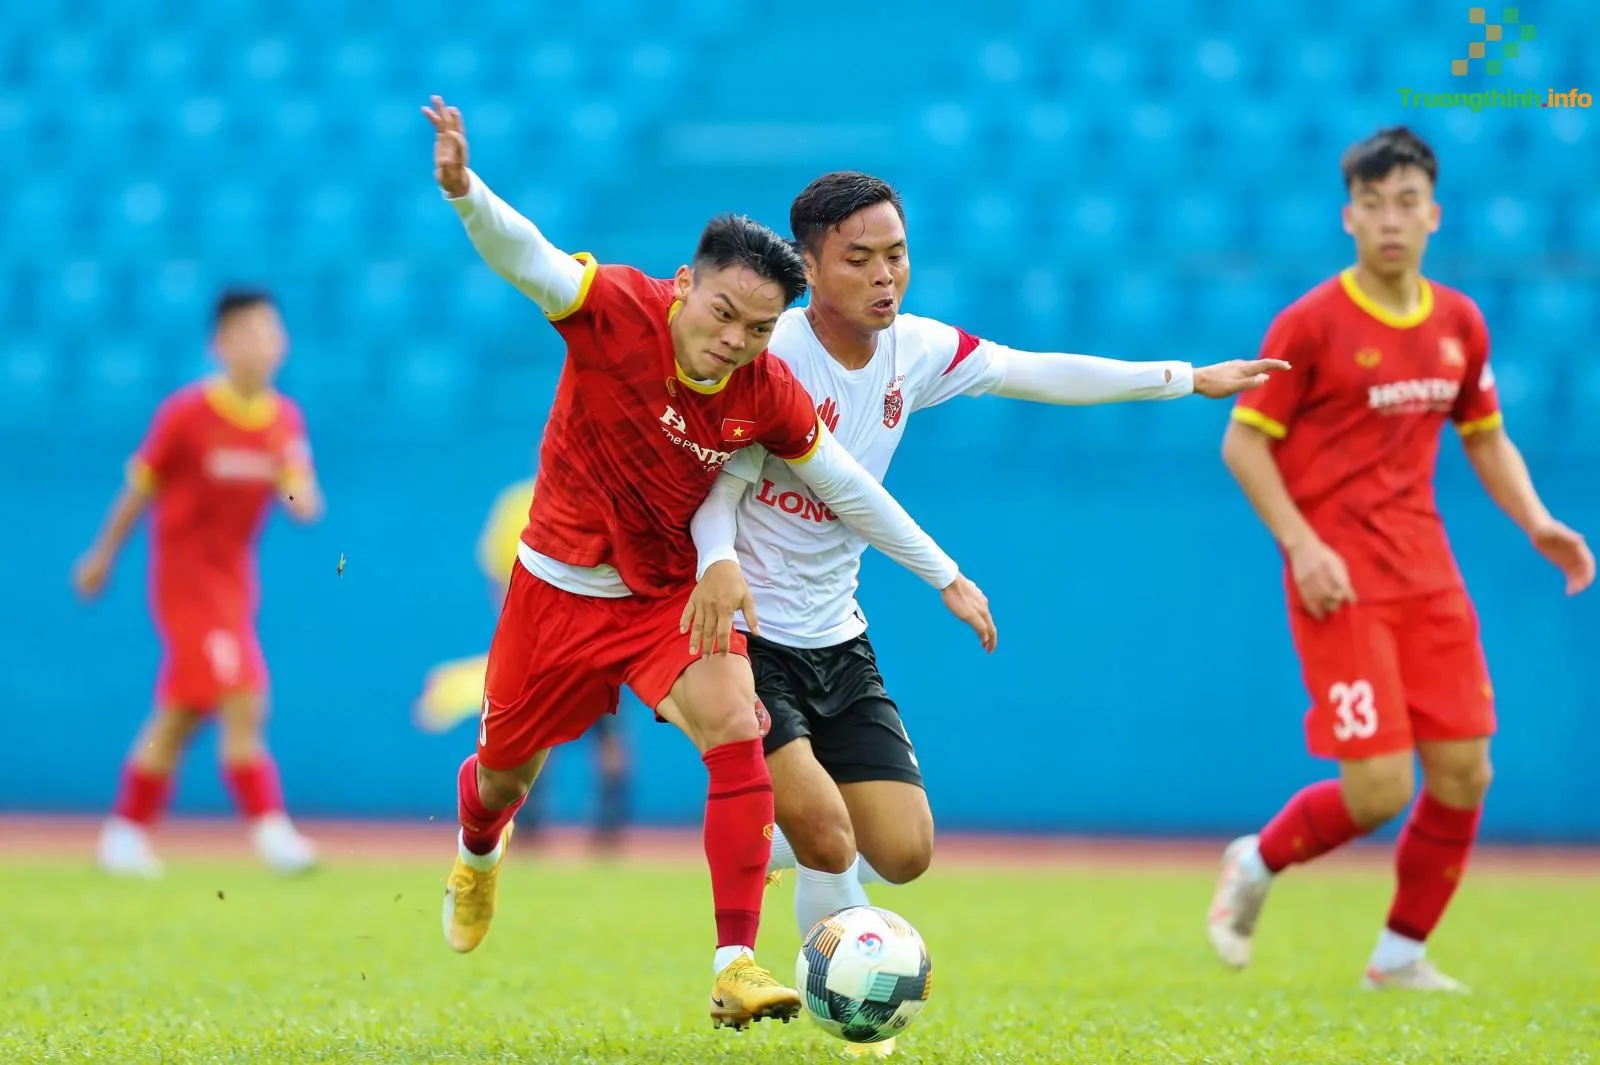 U23 Việt Nam vs U23 Singapore mấy giờ đá? Trực tiếp trận Việt Nam gặp Singapore